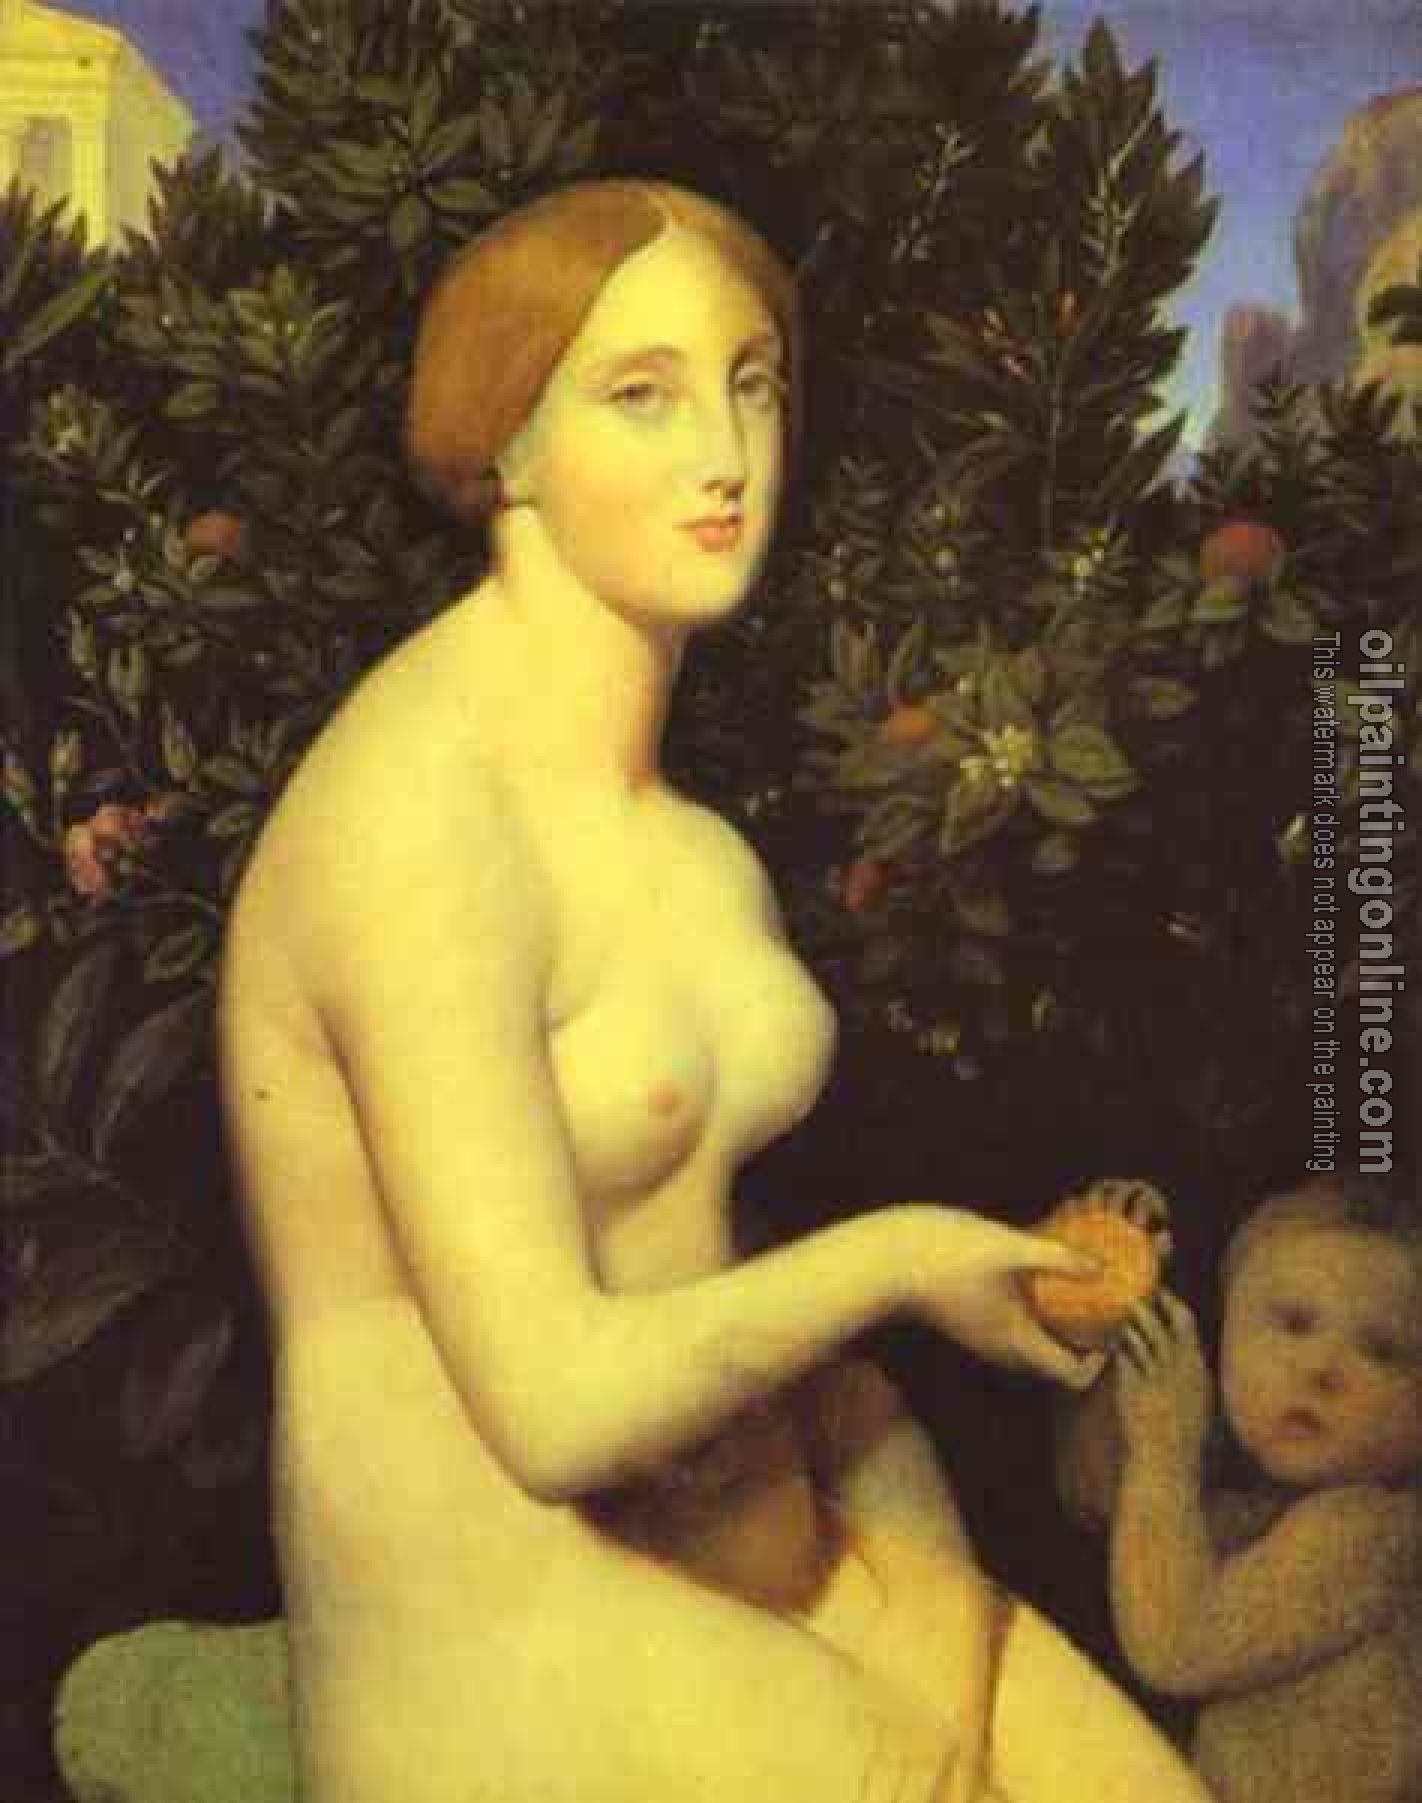 Ingres, Jean Auguste Dominique - Venus at Paphos II